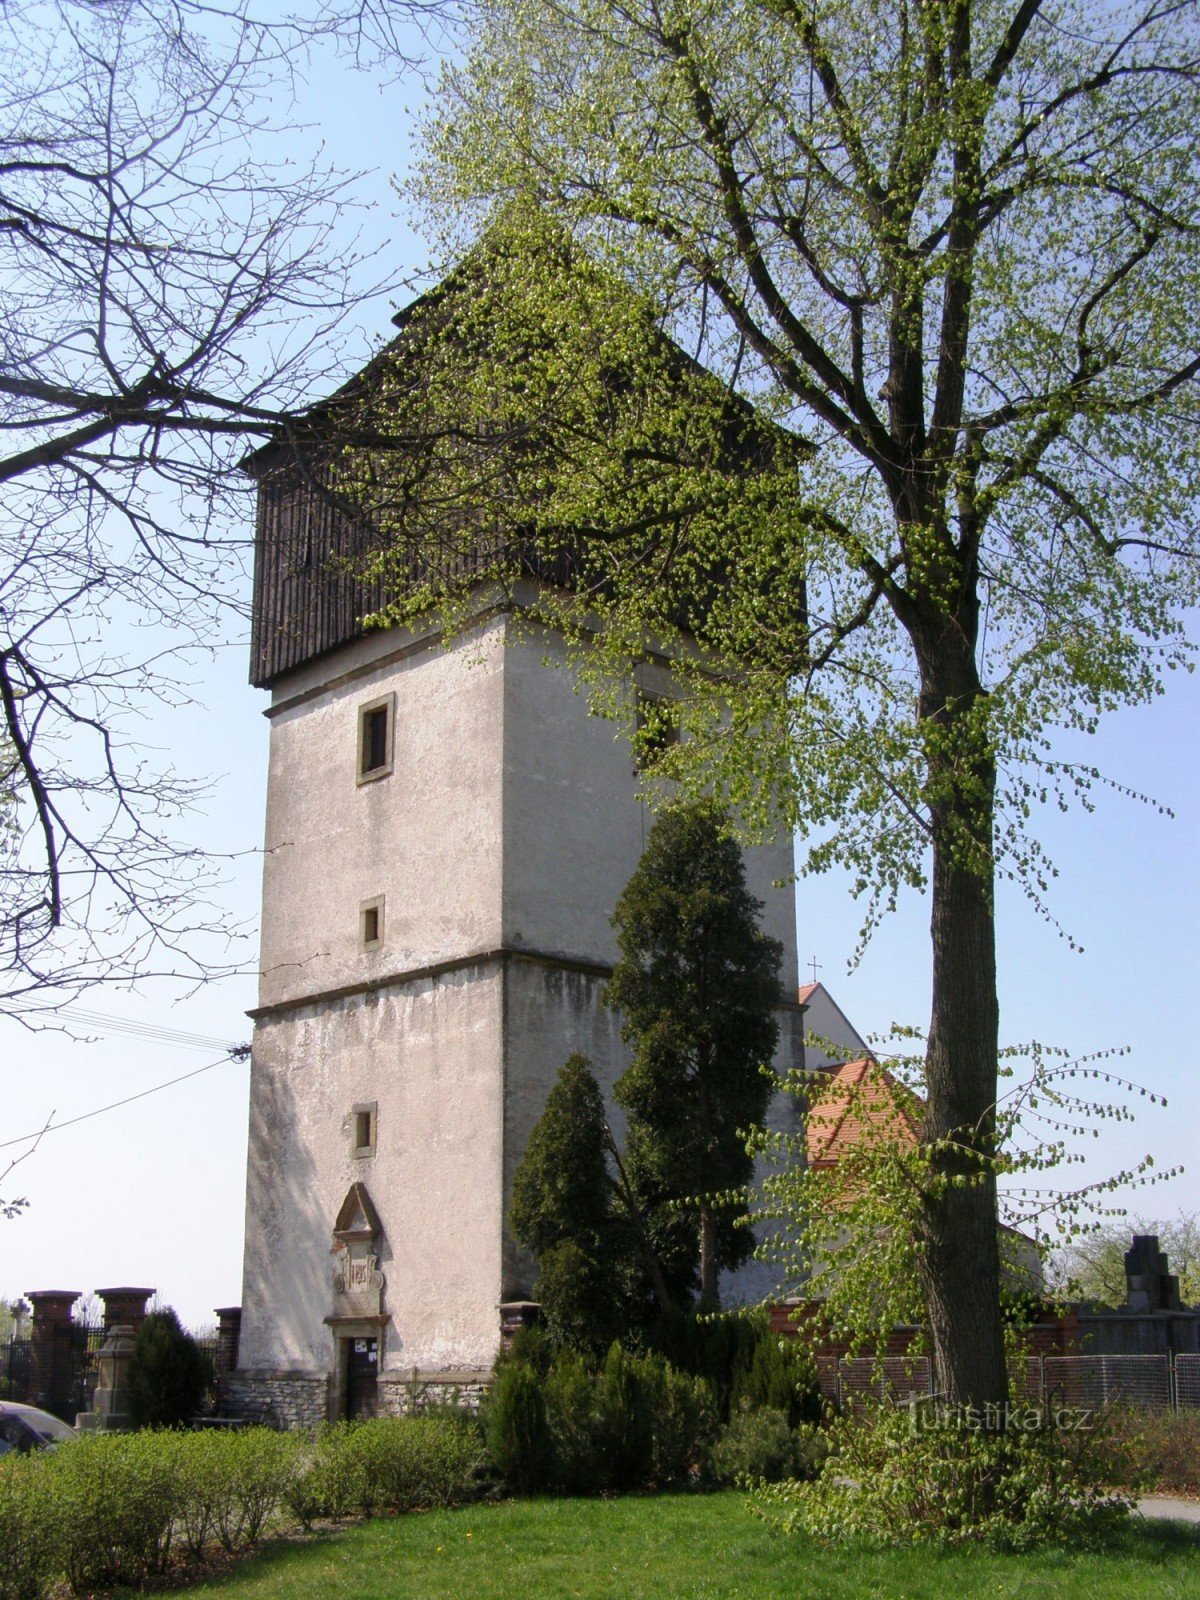 Černčice - 圣彼得教堂雅各与钟楼